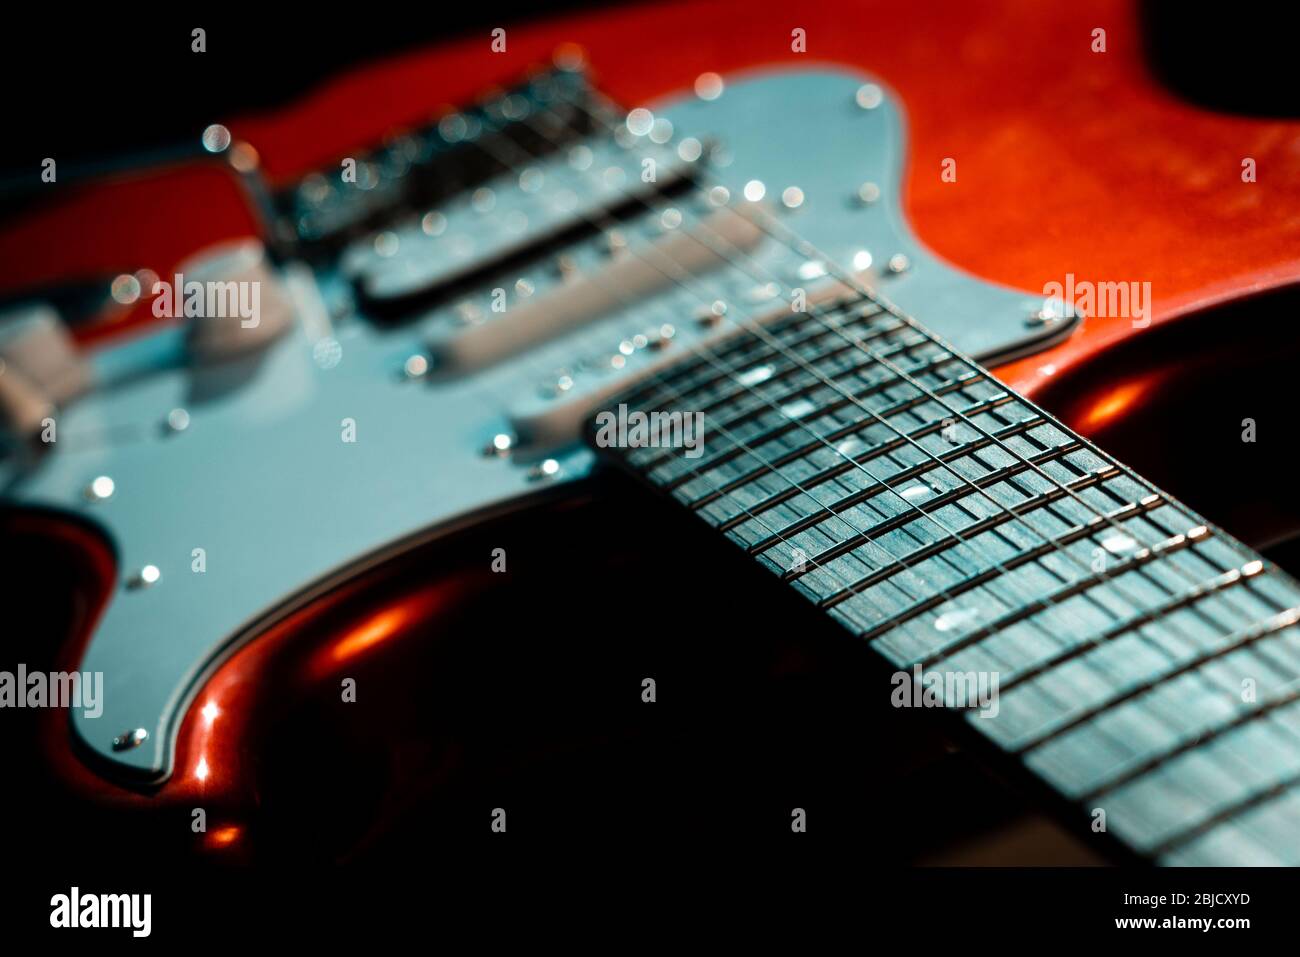 Détail d'une guitare électrique rouge Stratocaster Design Copy, les guitares électriques ont été inventées pour la première fois dans les années 1930 Banque D'Images